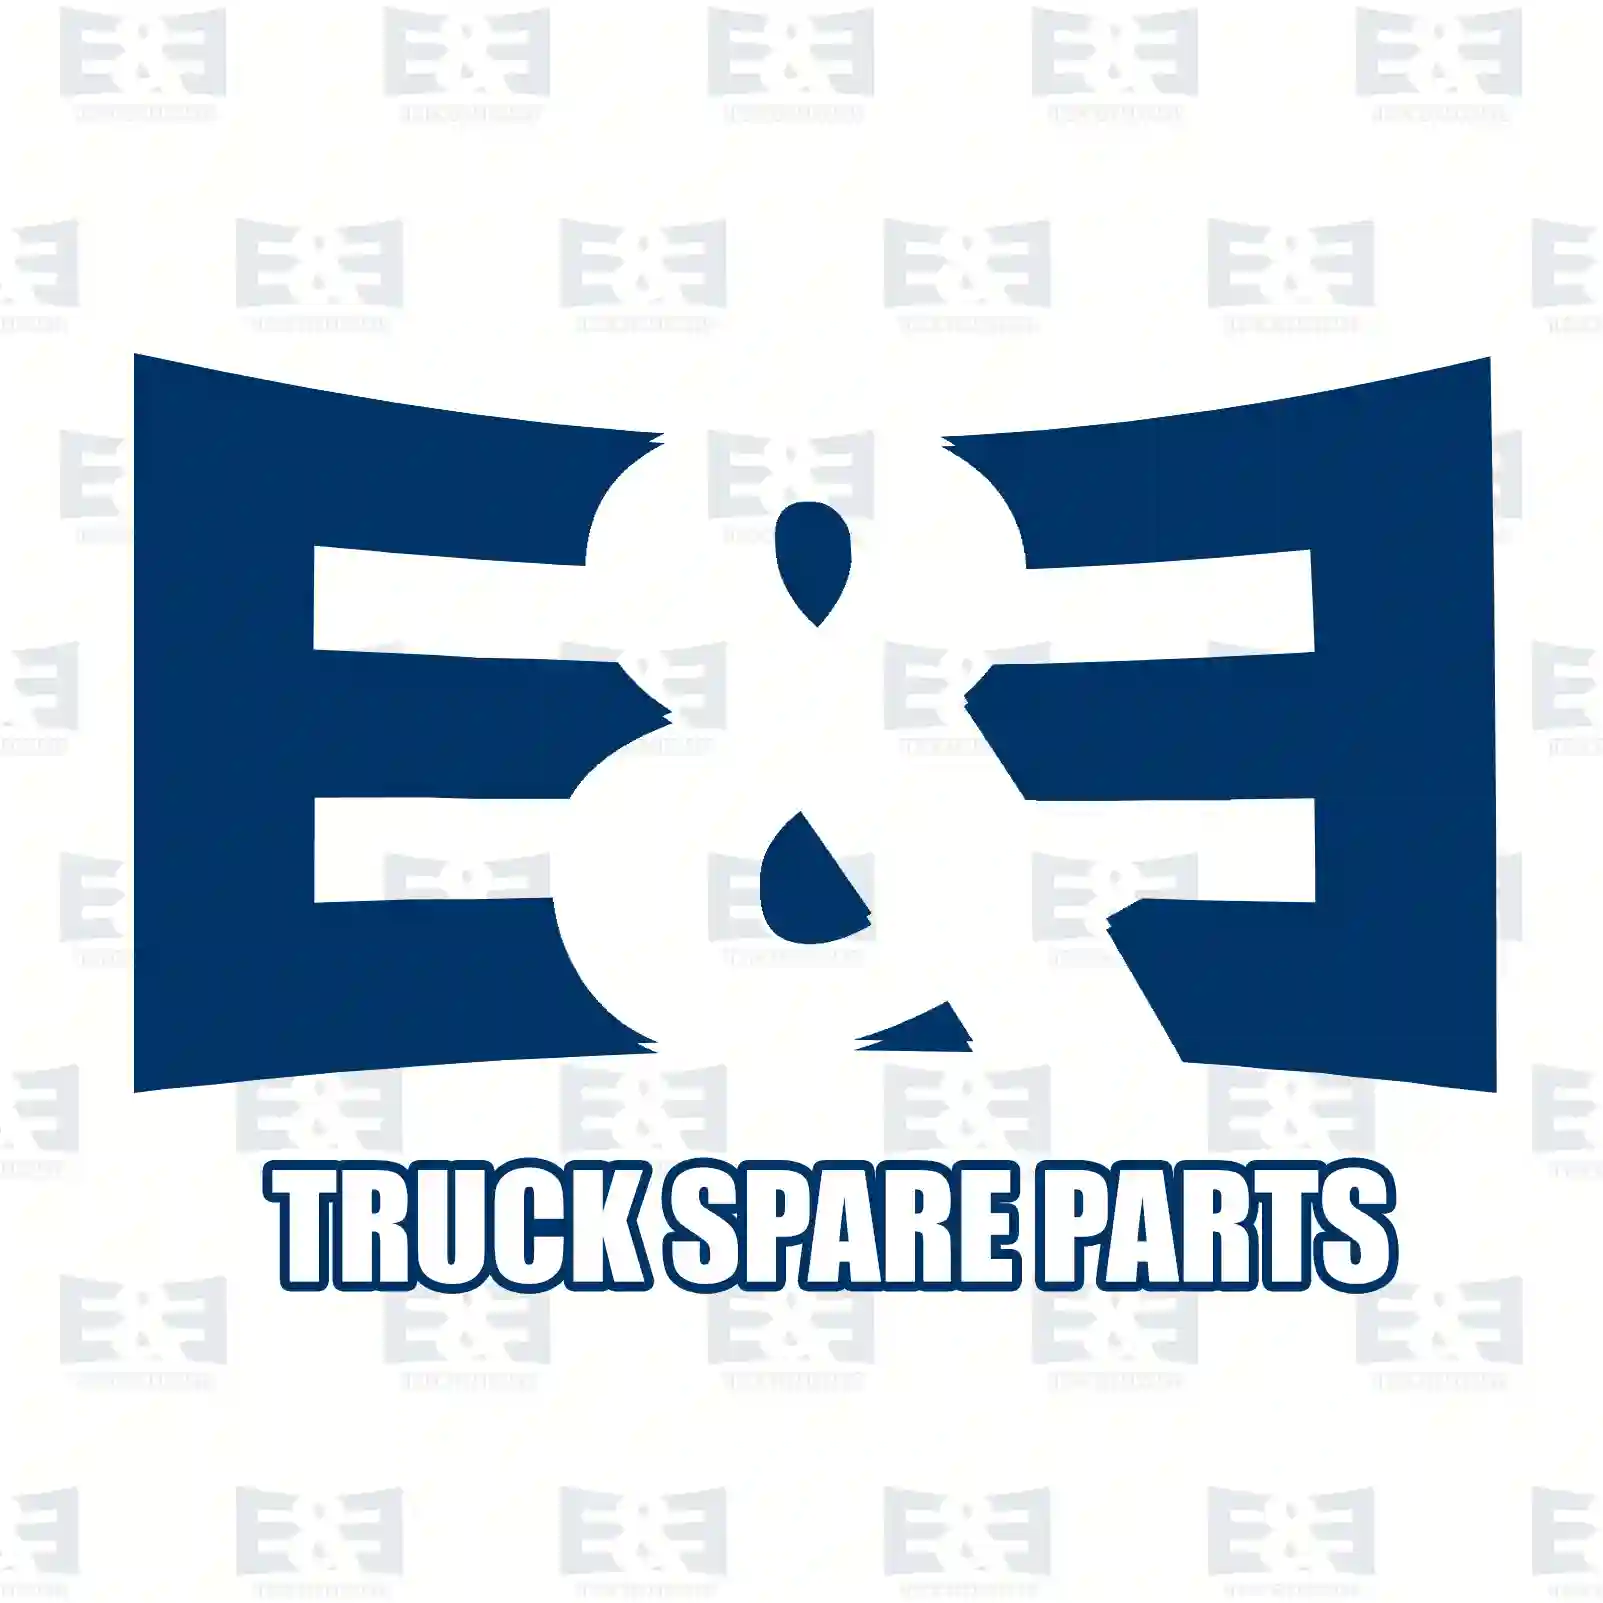 Turbocharger, 2E2207440, 1854855, 2057668, 2155074, 2327719, 2552125 ||  2E2207440 E&E Truck Spare Parts | Truck Spare Parts, Auotomotive Spare Parts Turbocharger, 2E2207440, 1854855, 2057668, 2155074, 2327719, 2552125 ||  2E2207440 E&E Truck Spare Parts | Truck Spare Parts, Auotomotive Spare Parts